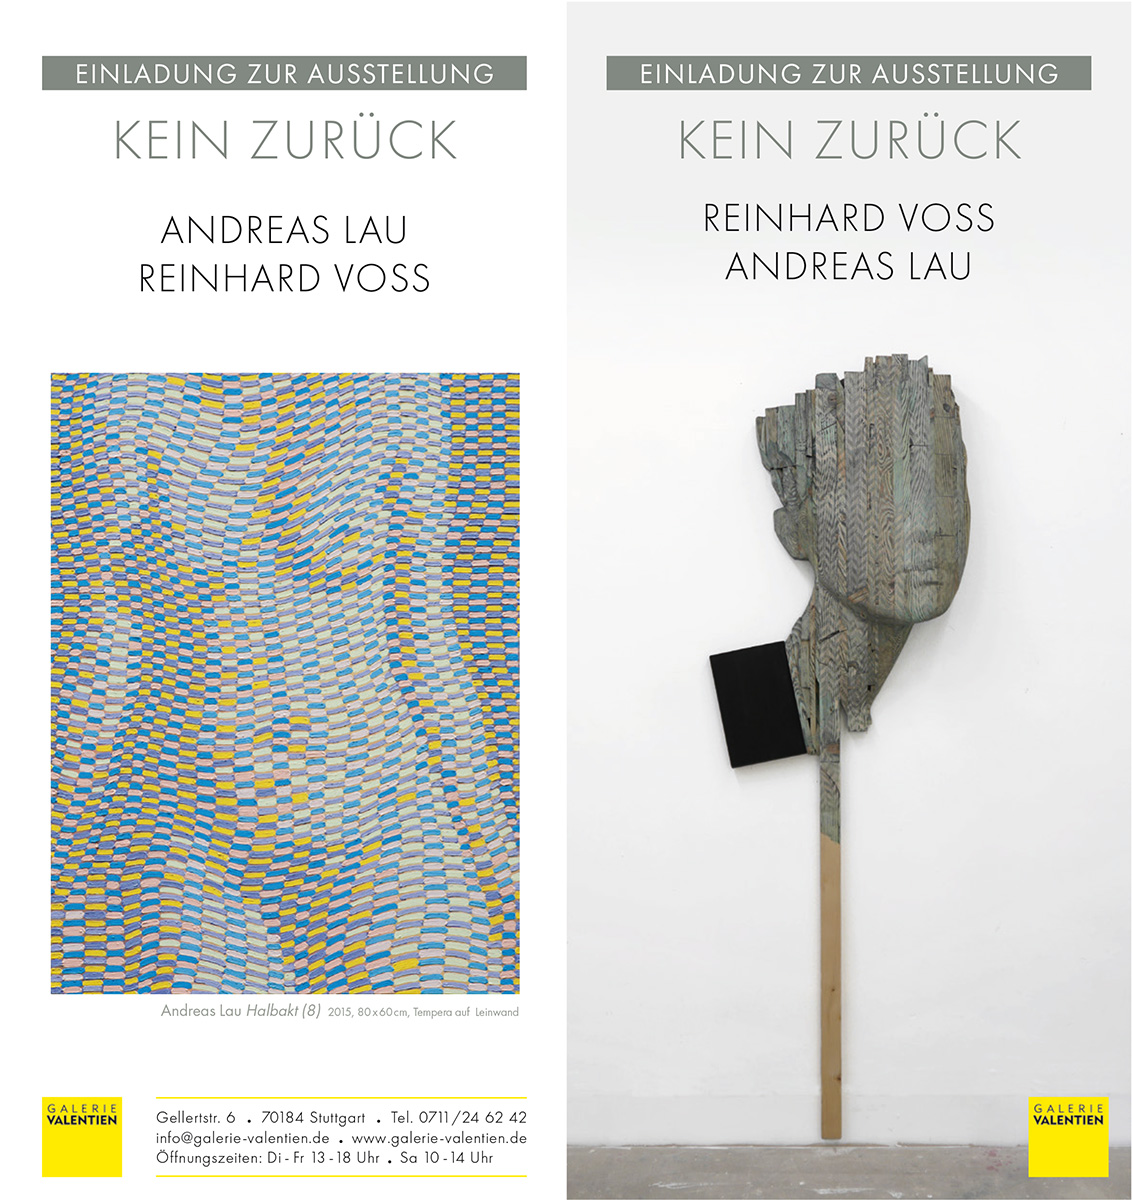 2015 Kein zurück Galerie Valentien Stuttgart, Andreas Lau - Reinhard Voss